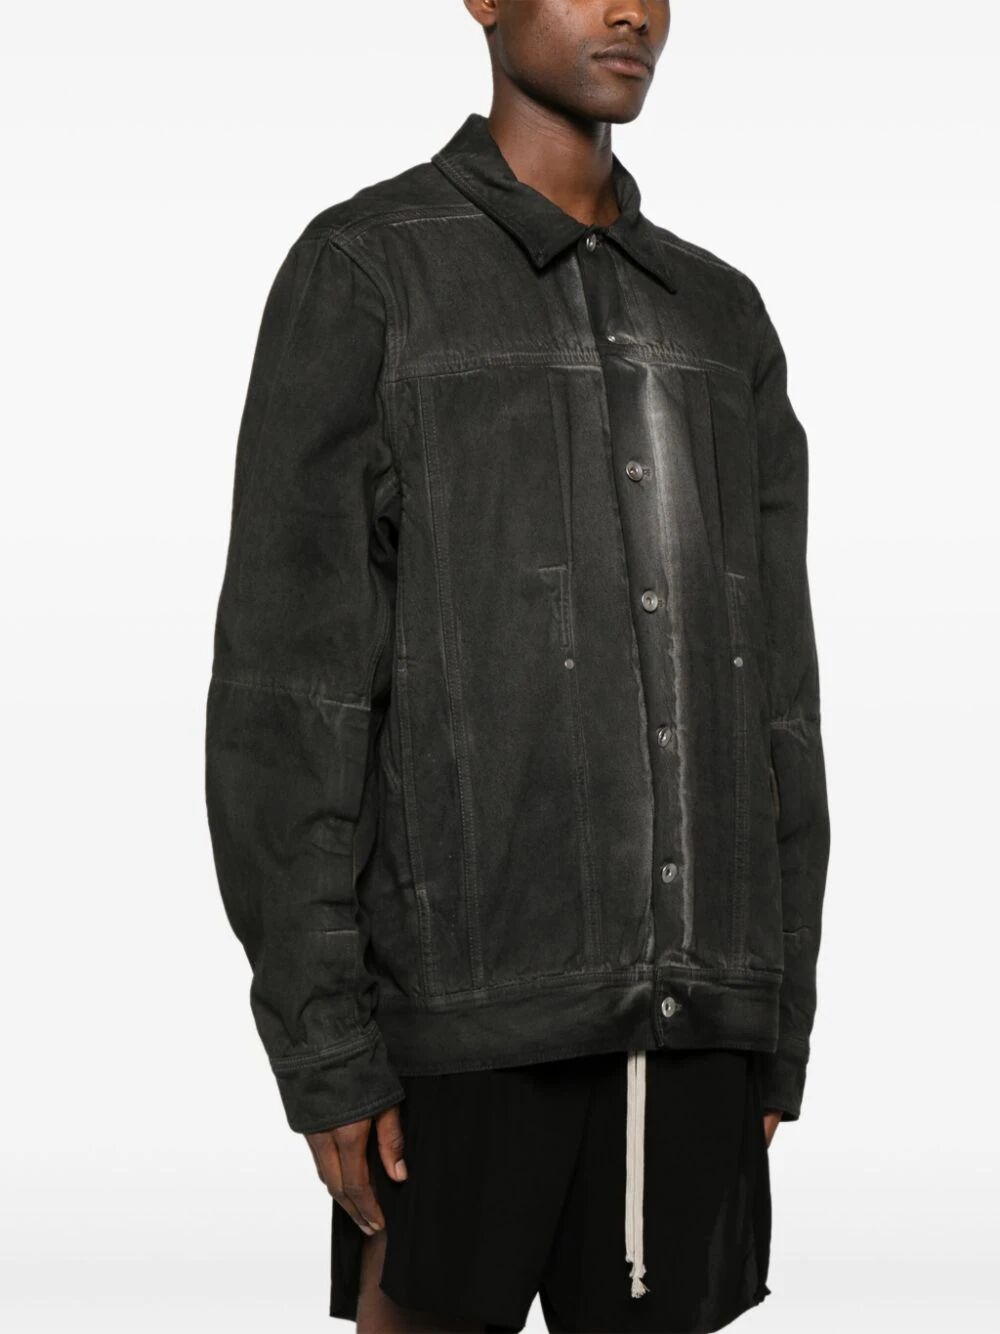 Lido workwear jacket in dark dust - 3